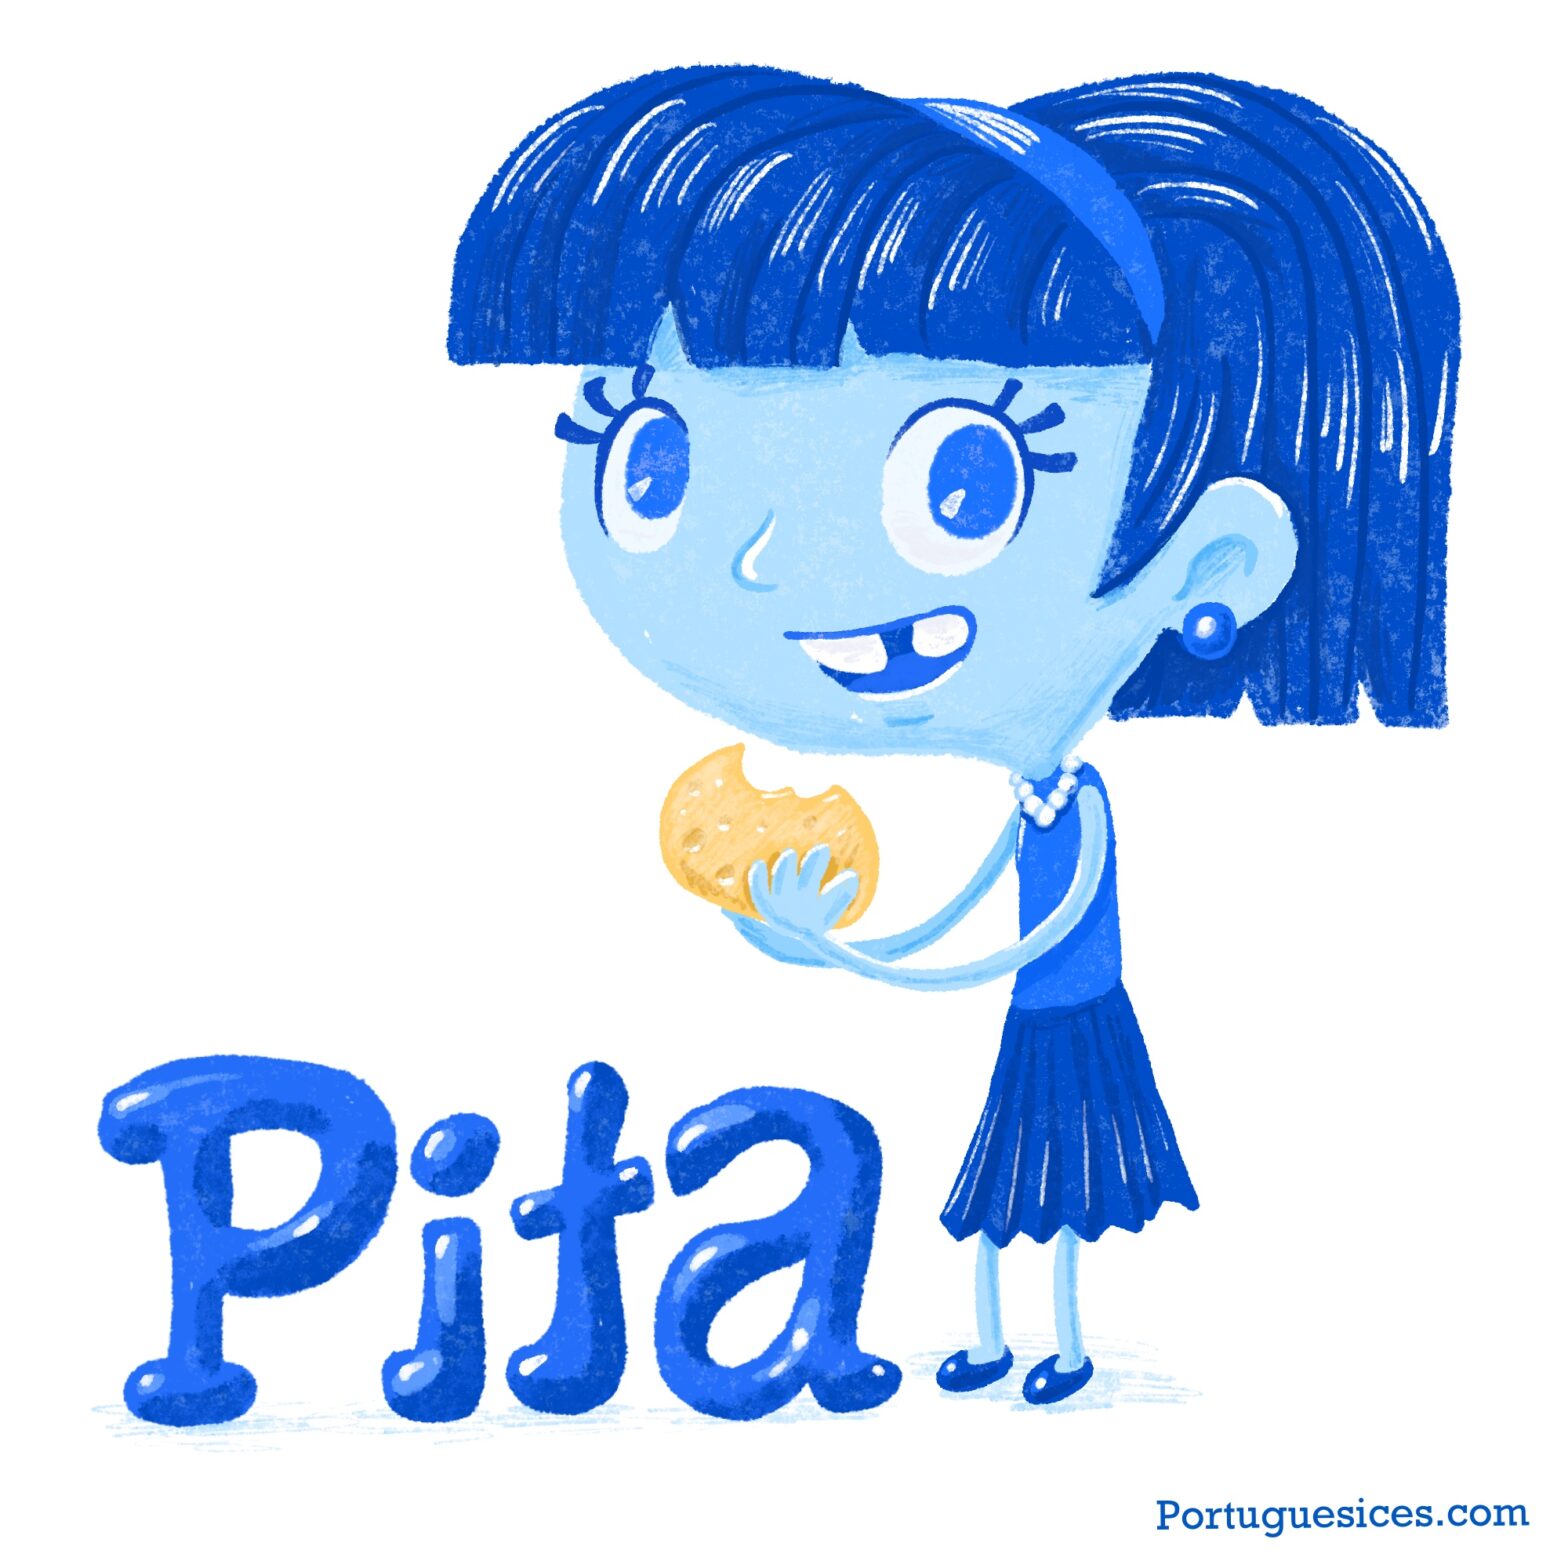 Pita